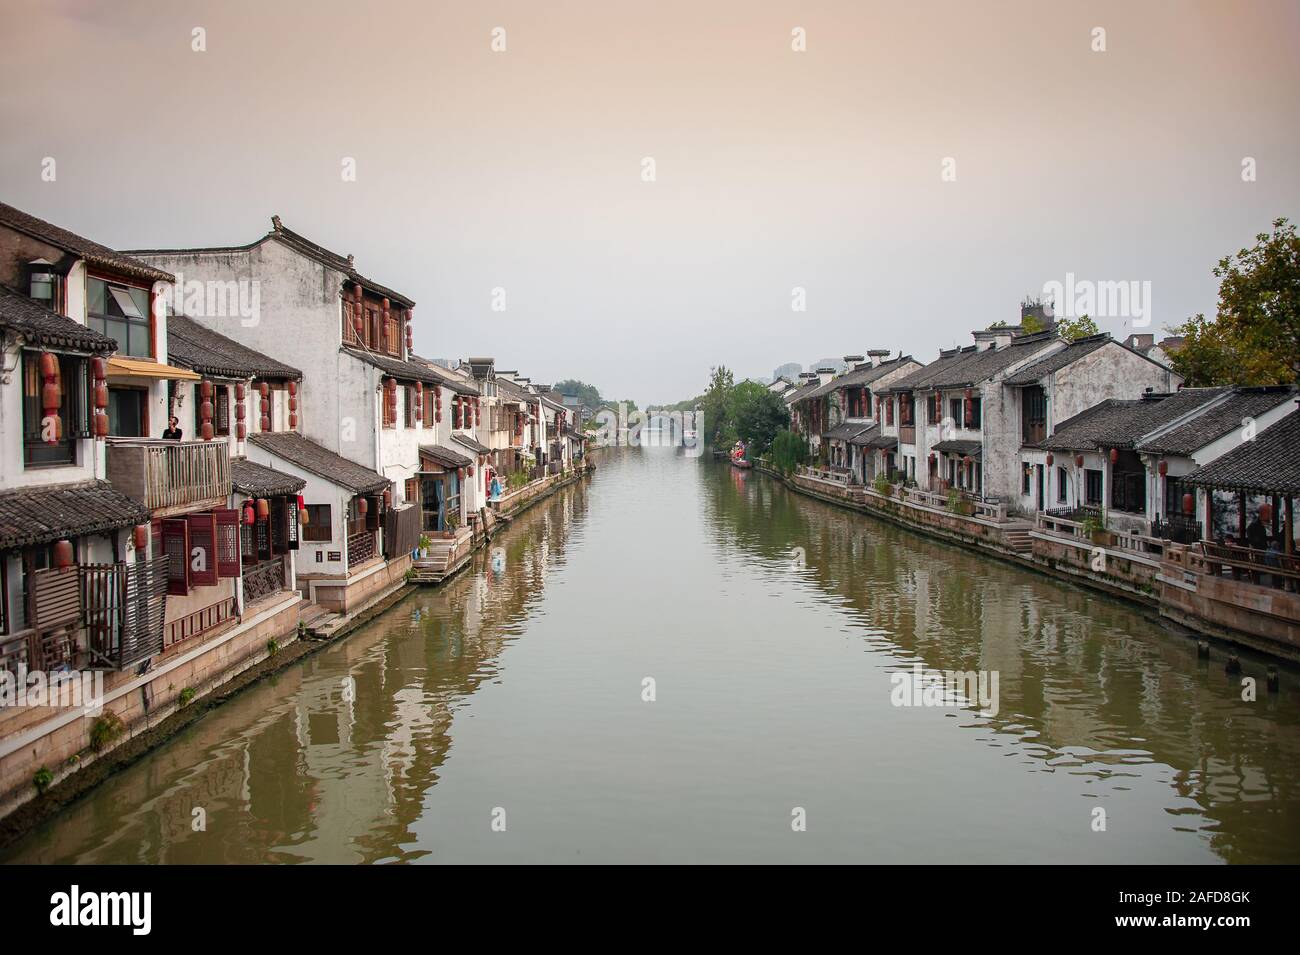 Vues canal pittoresque vieille ville de Wuxi, Jiangsu Province, China. Partie d'un réseau d'eau, reliées par le Grand Canal - la Chine. Banque D'Images